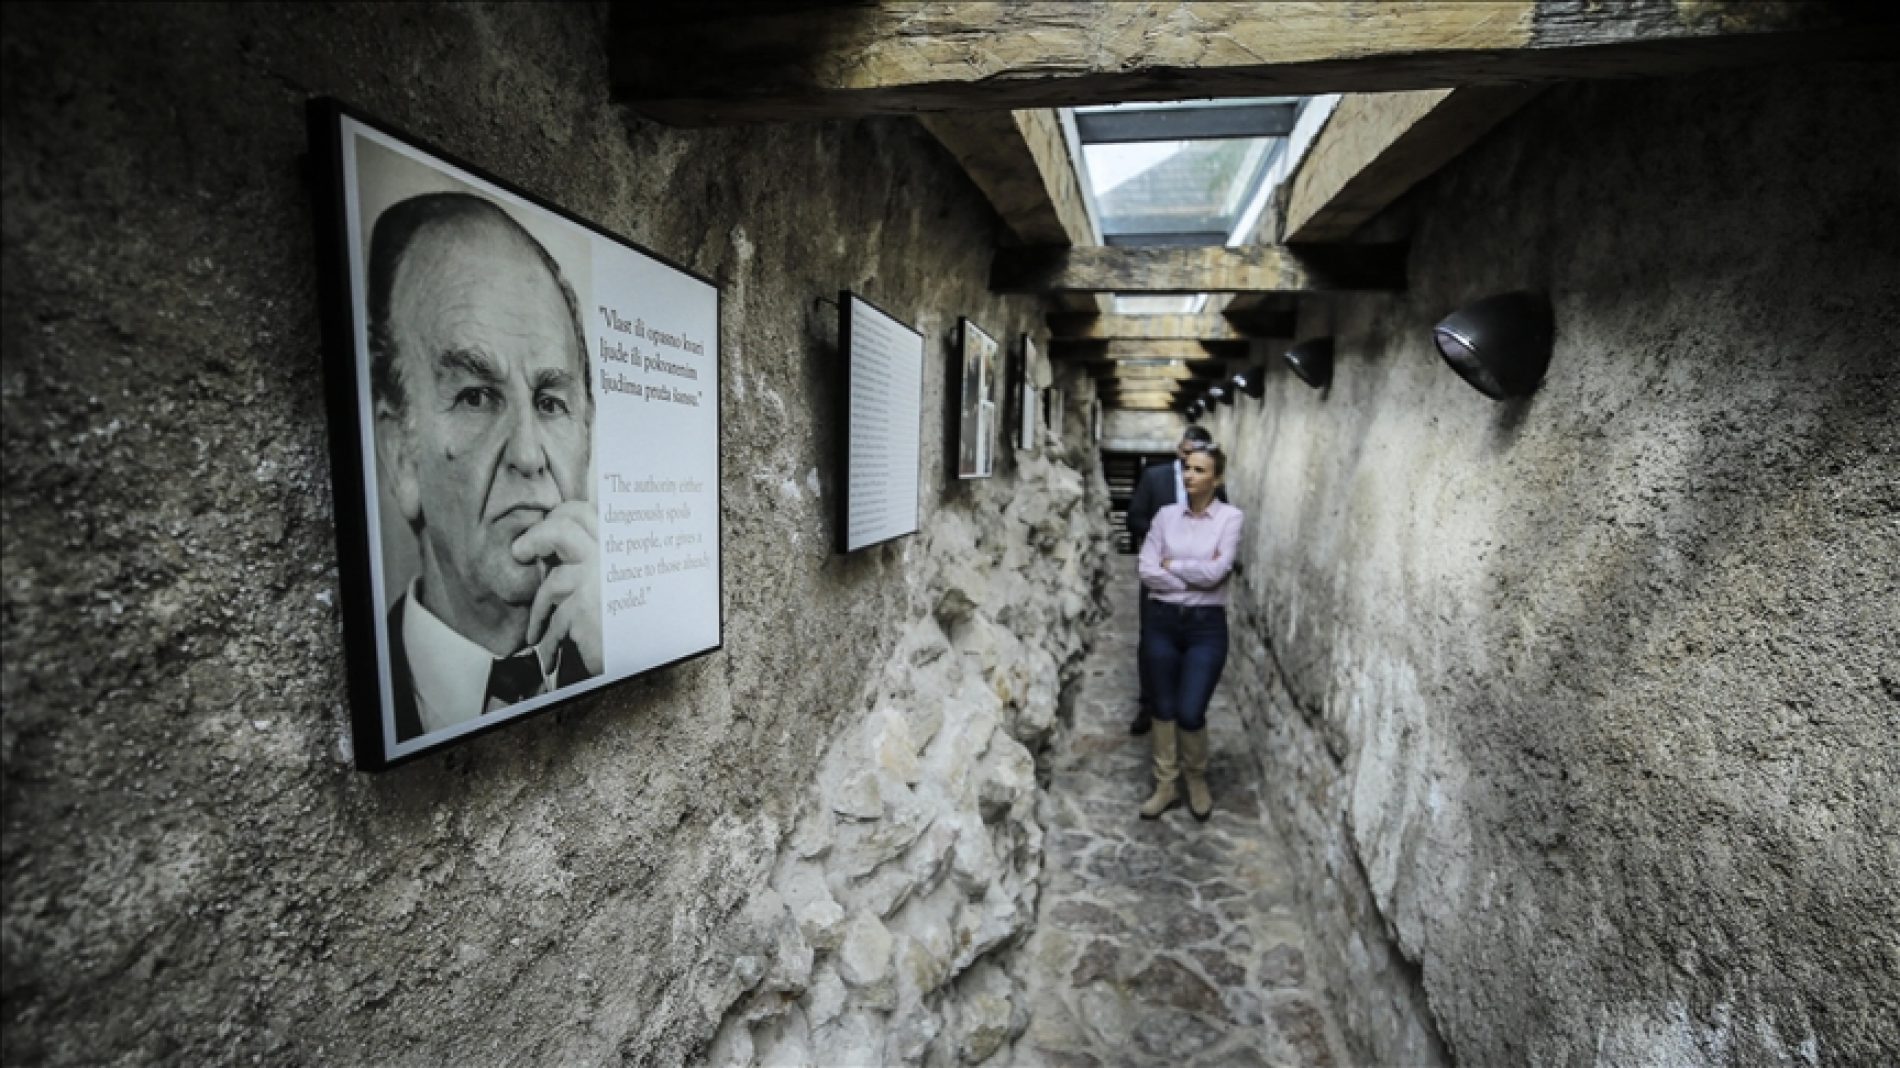 Muzej “Alija Izetbegović” čuva sjećanje na život i djelo prvog predsjednika Predsjedništva RBiH